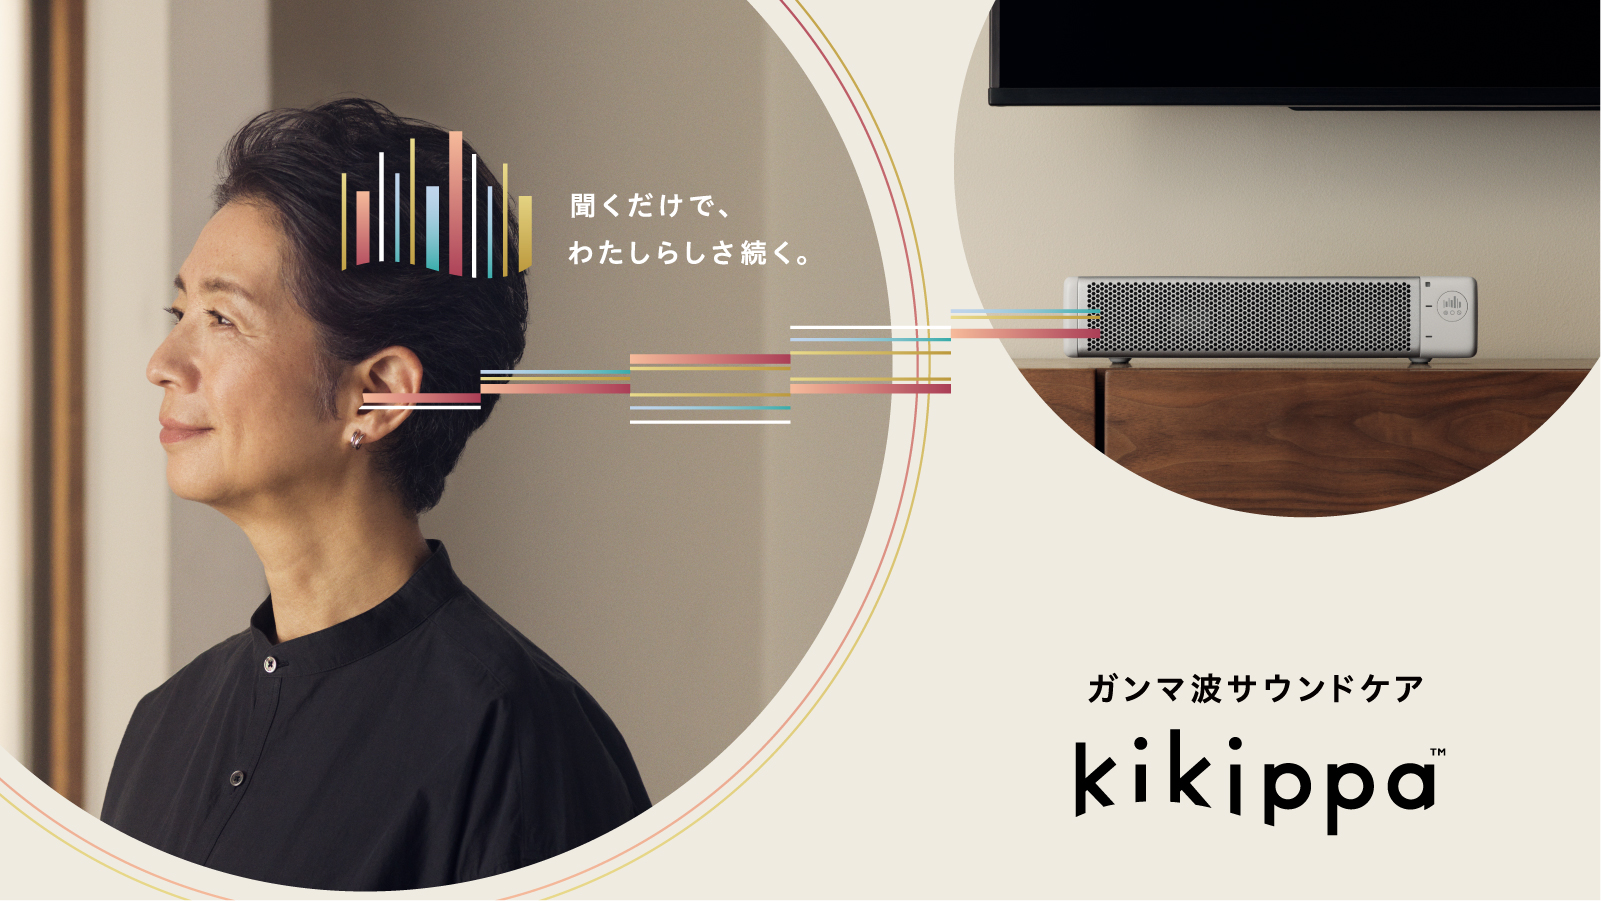 日常生活でガンマ波サウンドを聴くテレビスピーカー「kikippa」4月18日（火）より発売開始<br>〜ガンマ波変調技術によって高齢者の暮らしを快適に〜